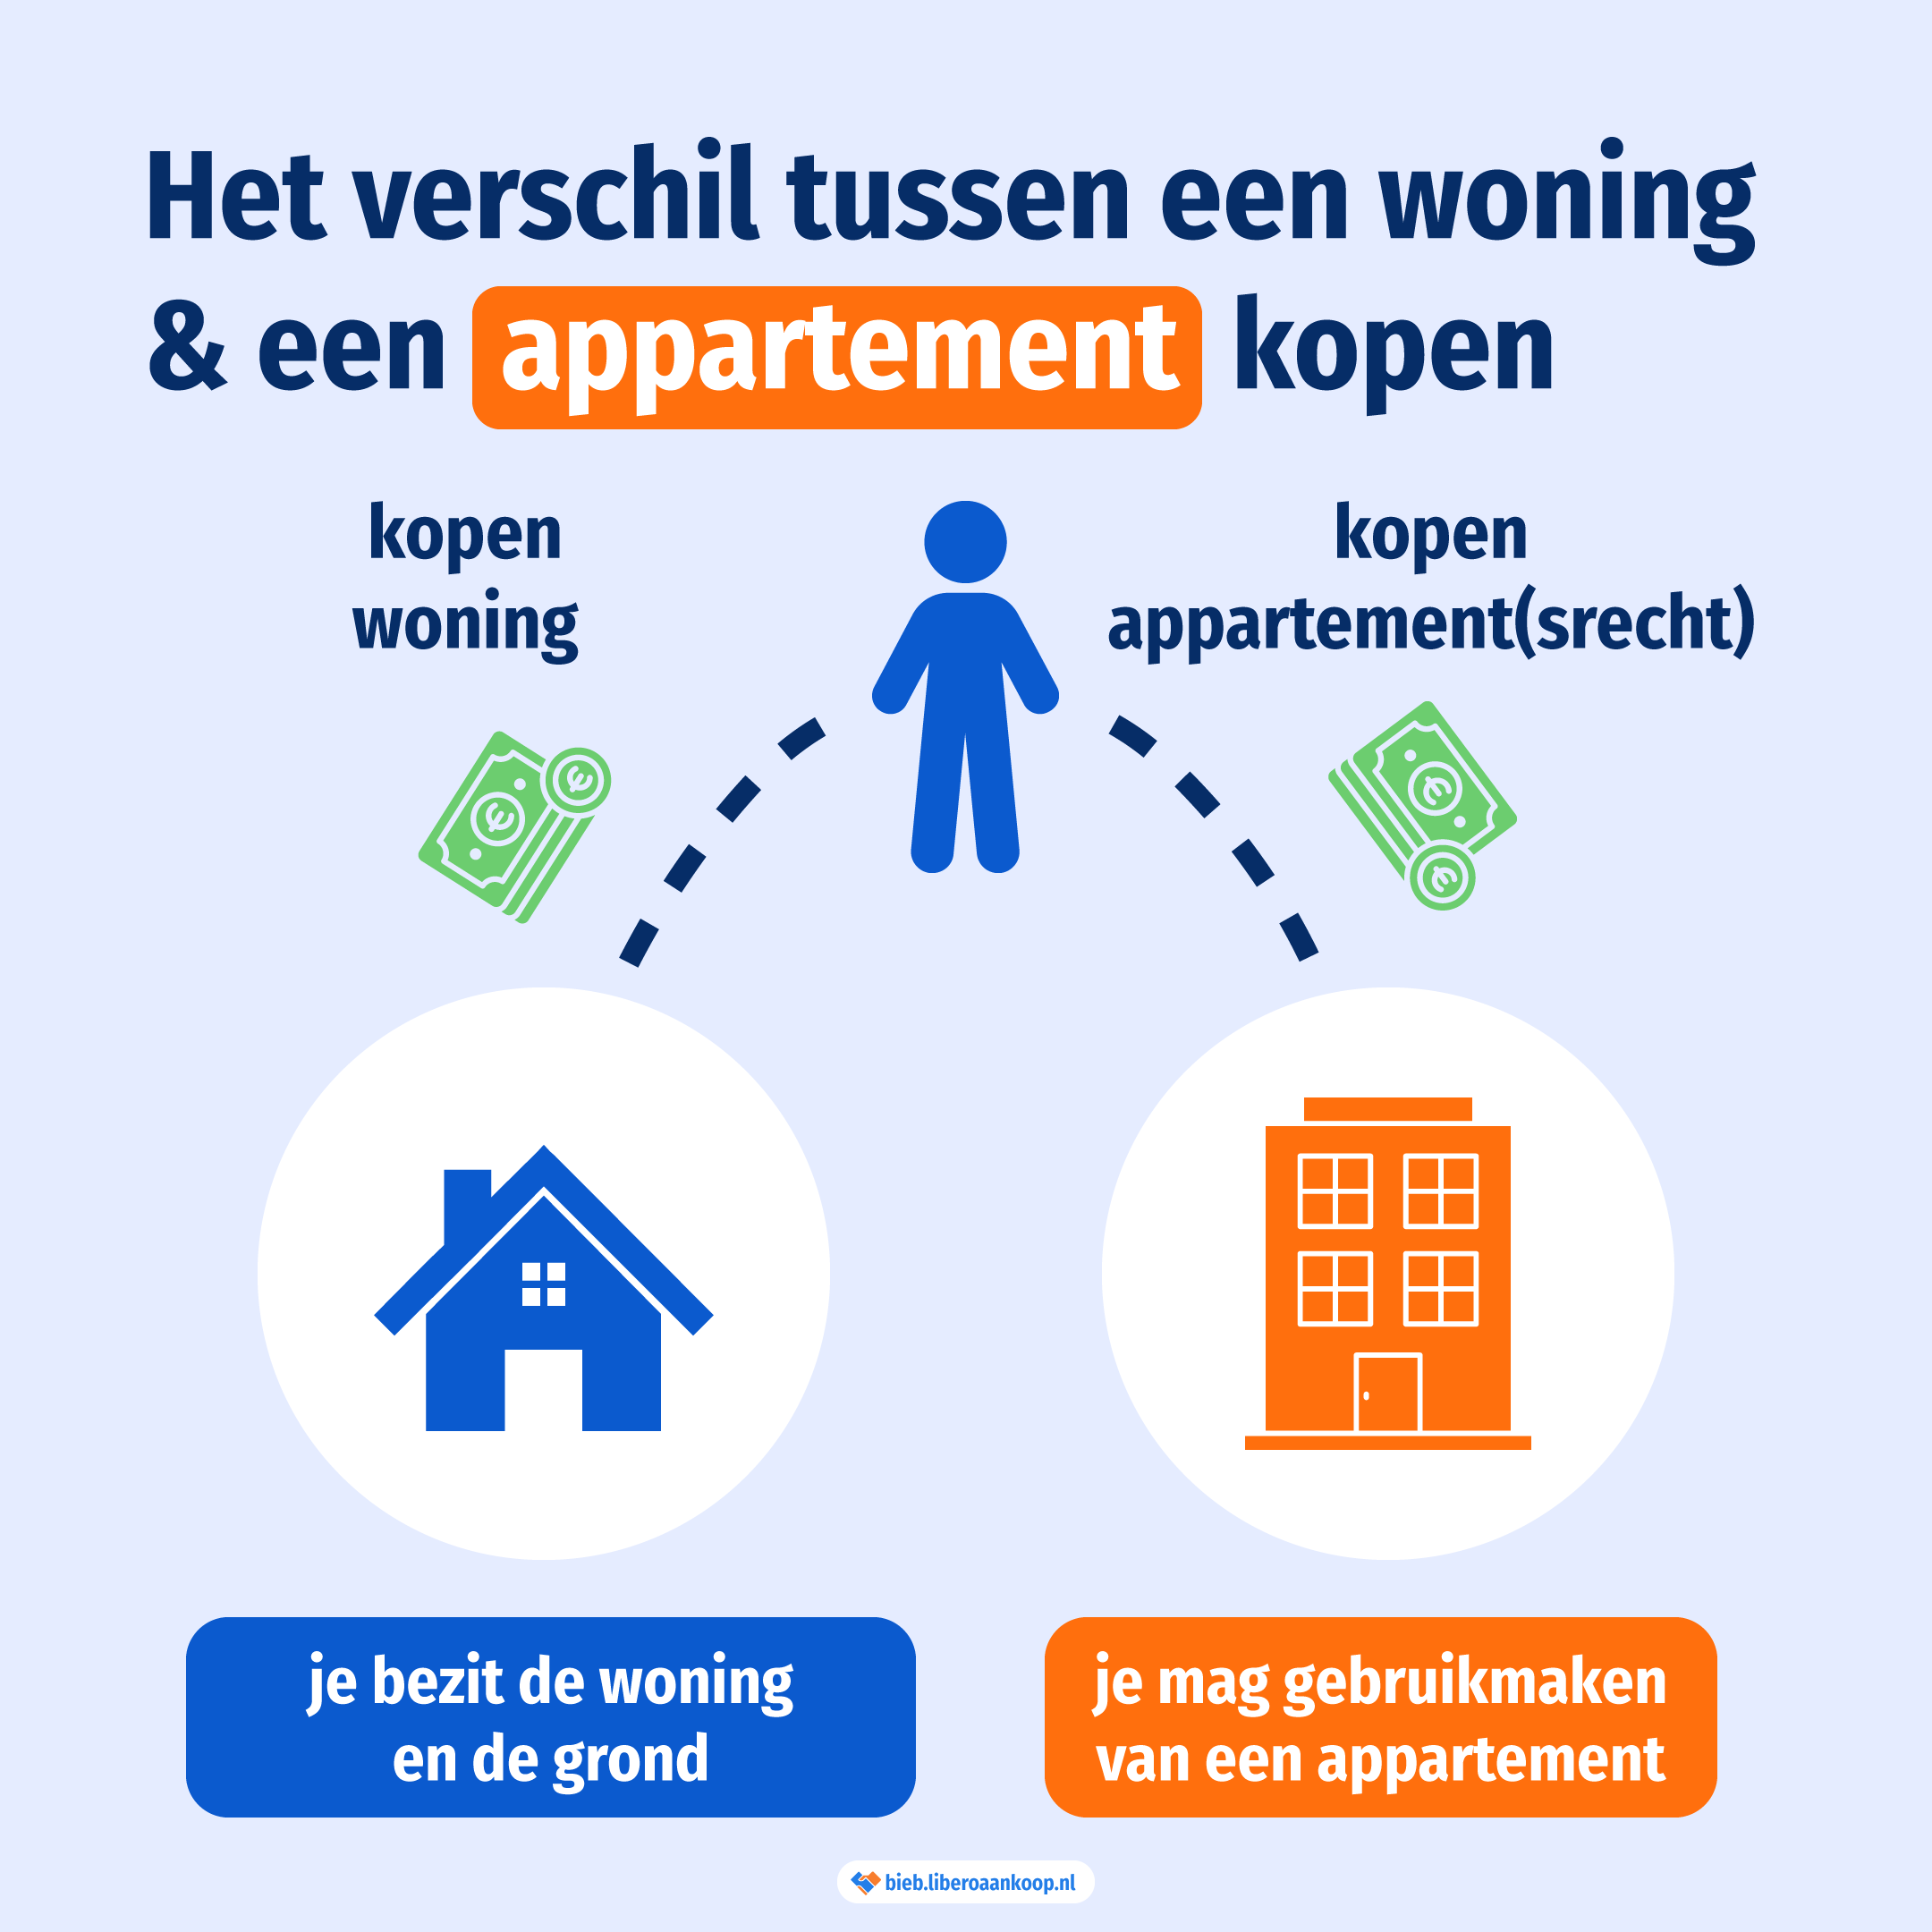 Het verschil tussen een woning en een appartement kopen